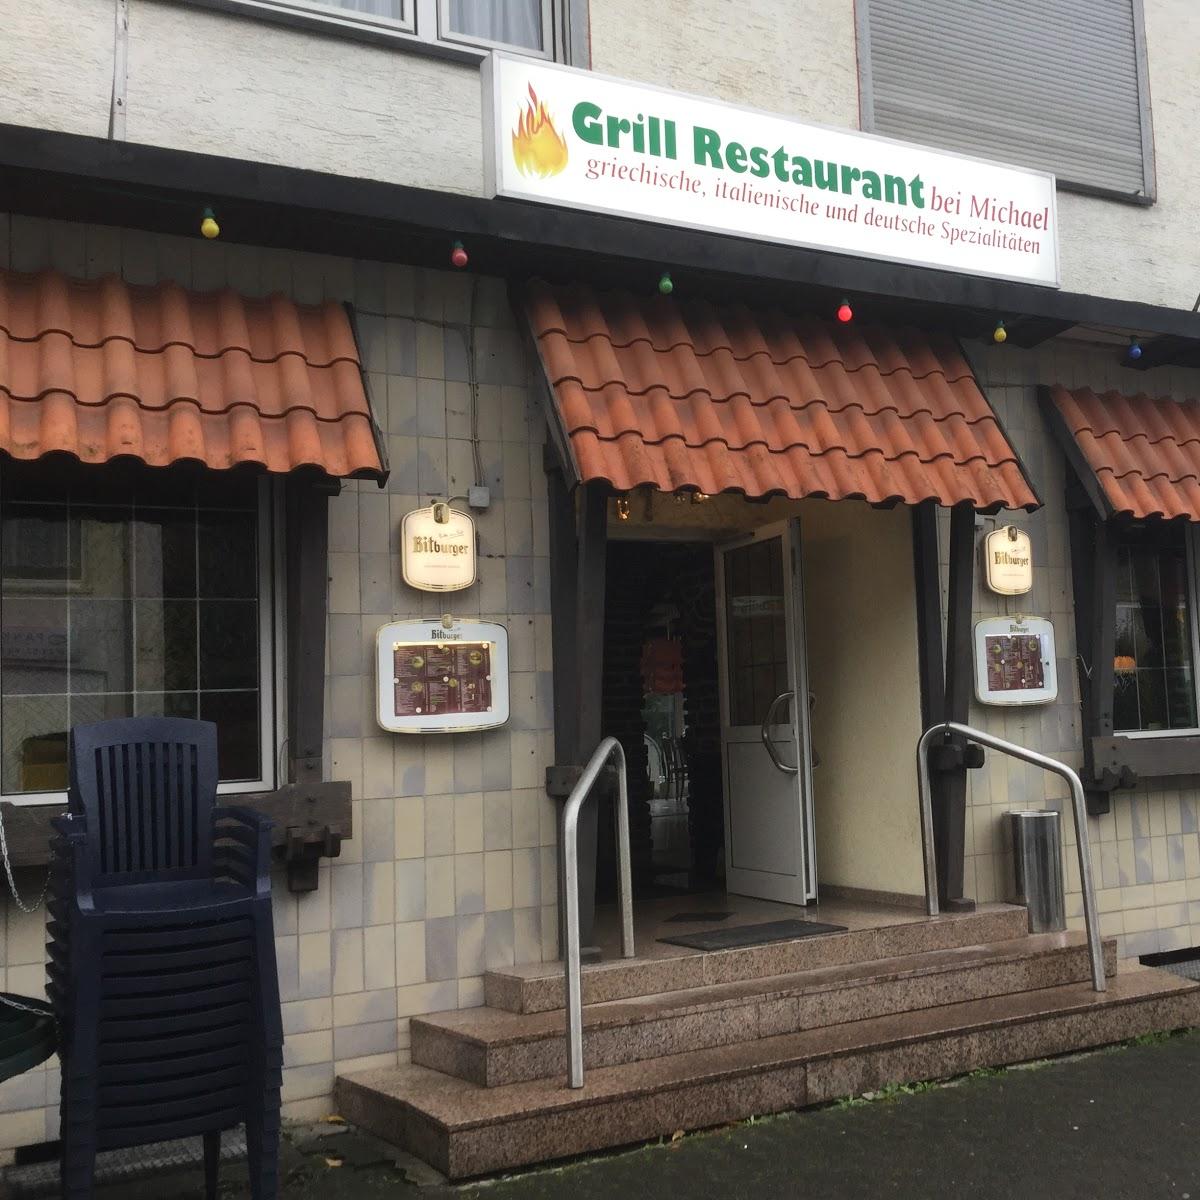 Restaurant "Grillstube bei Michael" in  Lüdenscheid